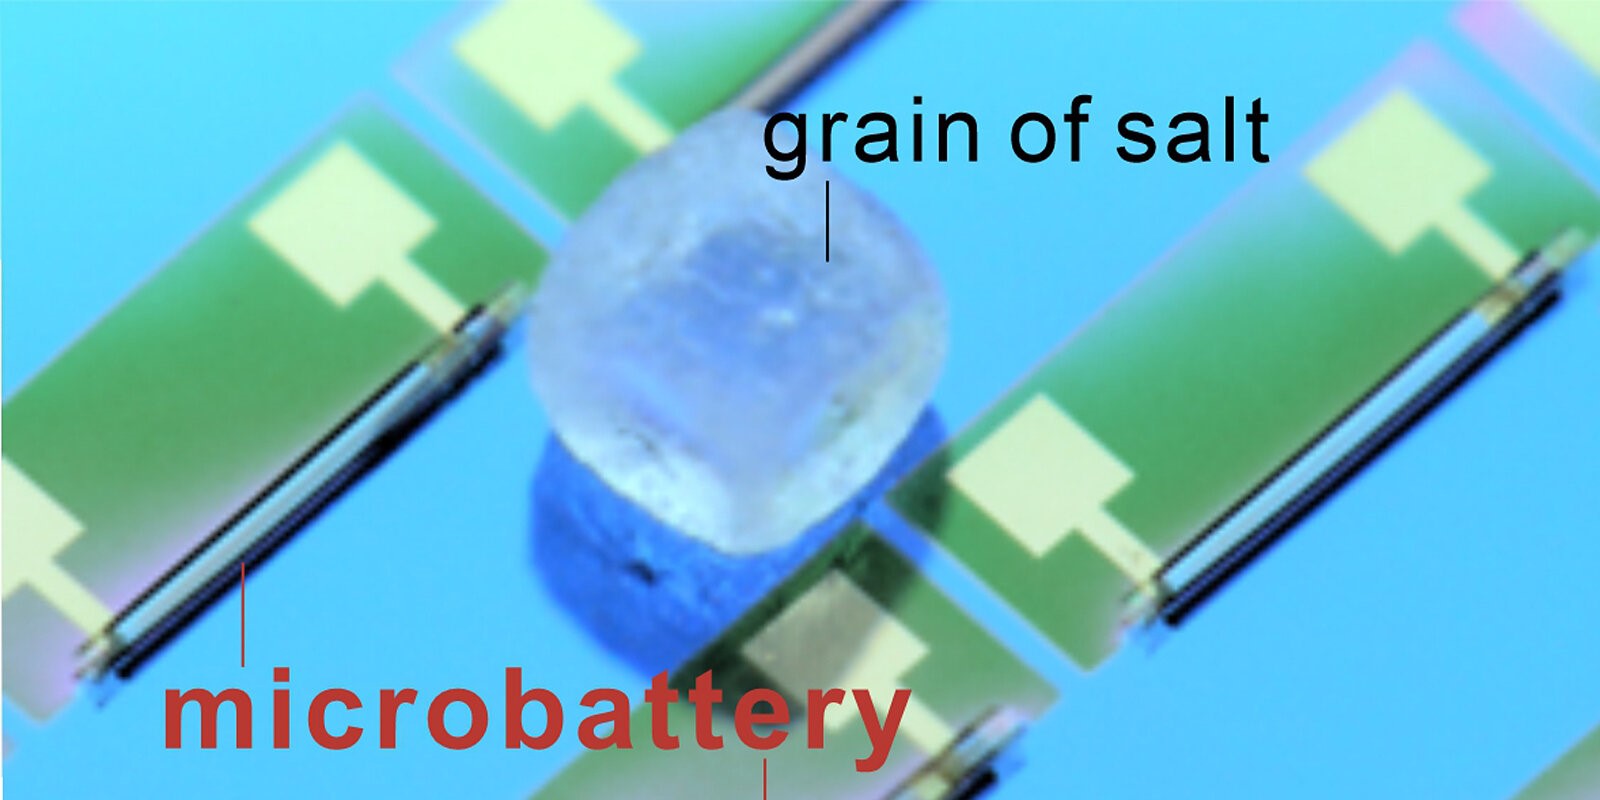 開発されたマイクロバッテリー（microbattery）と塩粒（grain of salt）